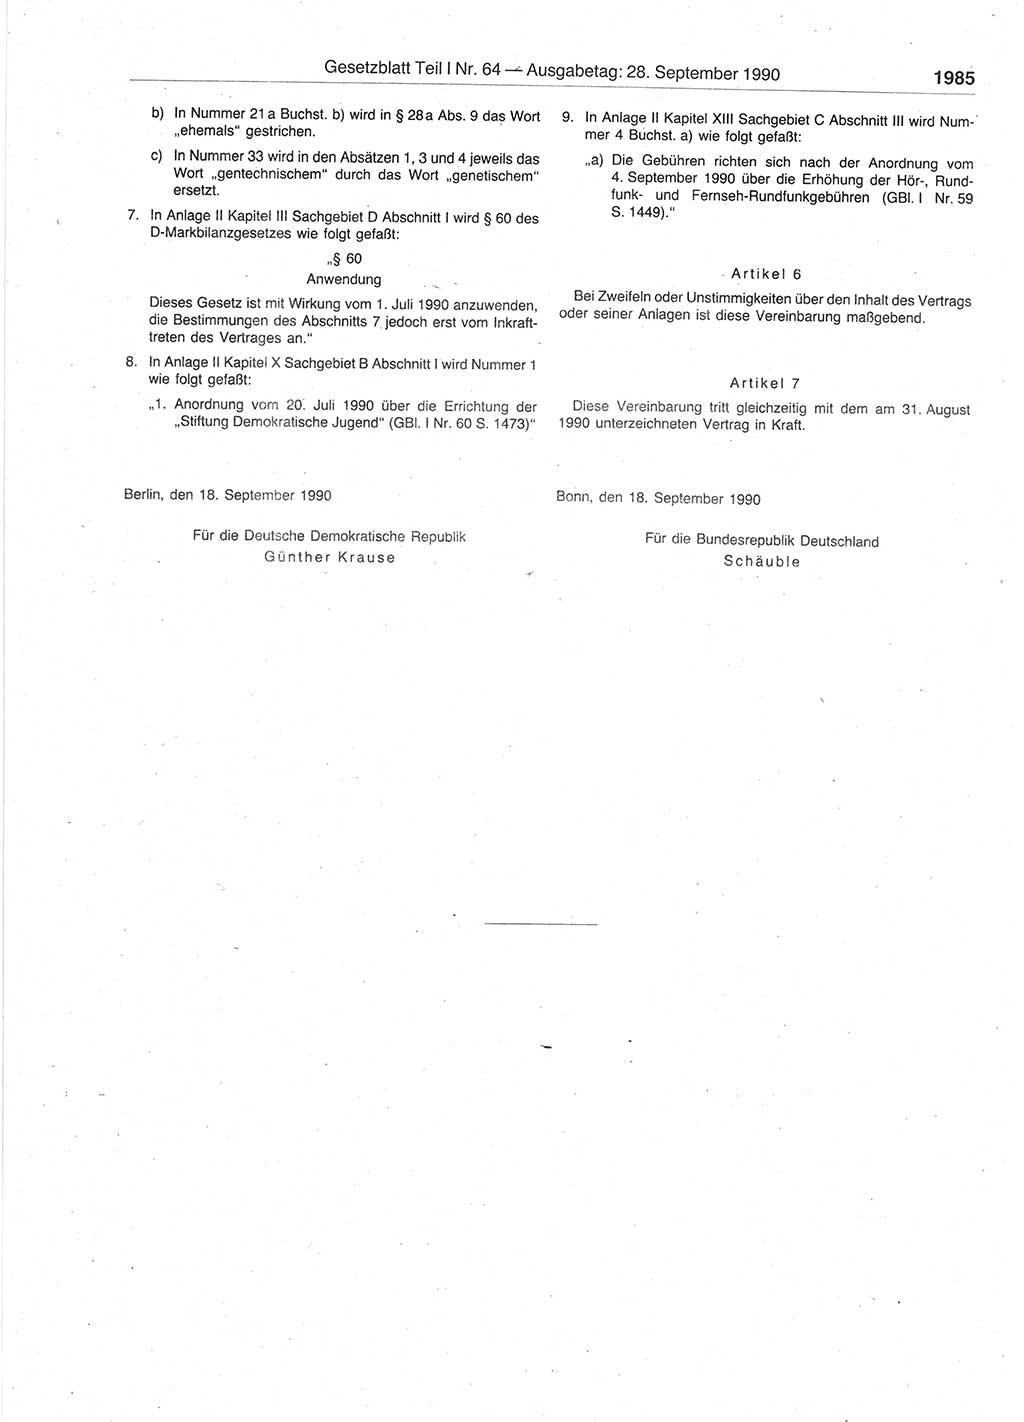 Gesetzblatt (GBl.) der Deutschen Demokratischen Republik (DDR) Teil Ⅰ 1990, Seite 1985 (GBl. DDR Ⅰ 1990, S. 1985)